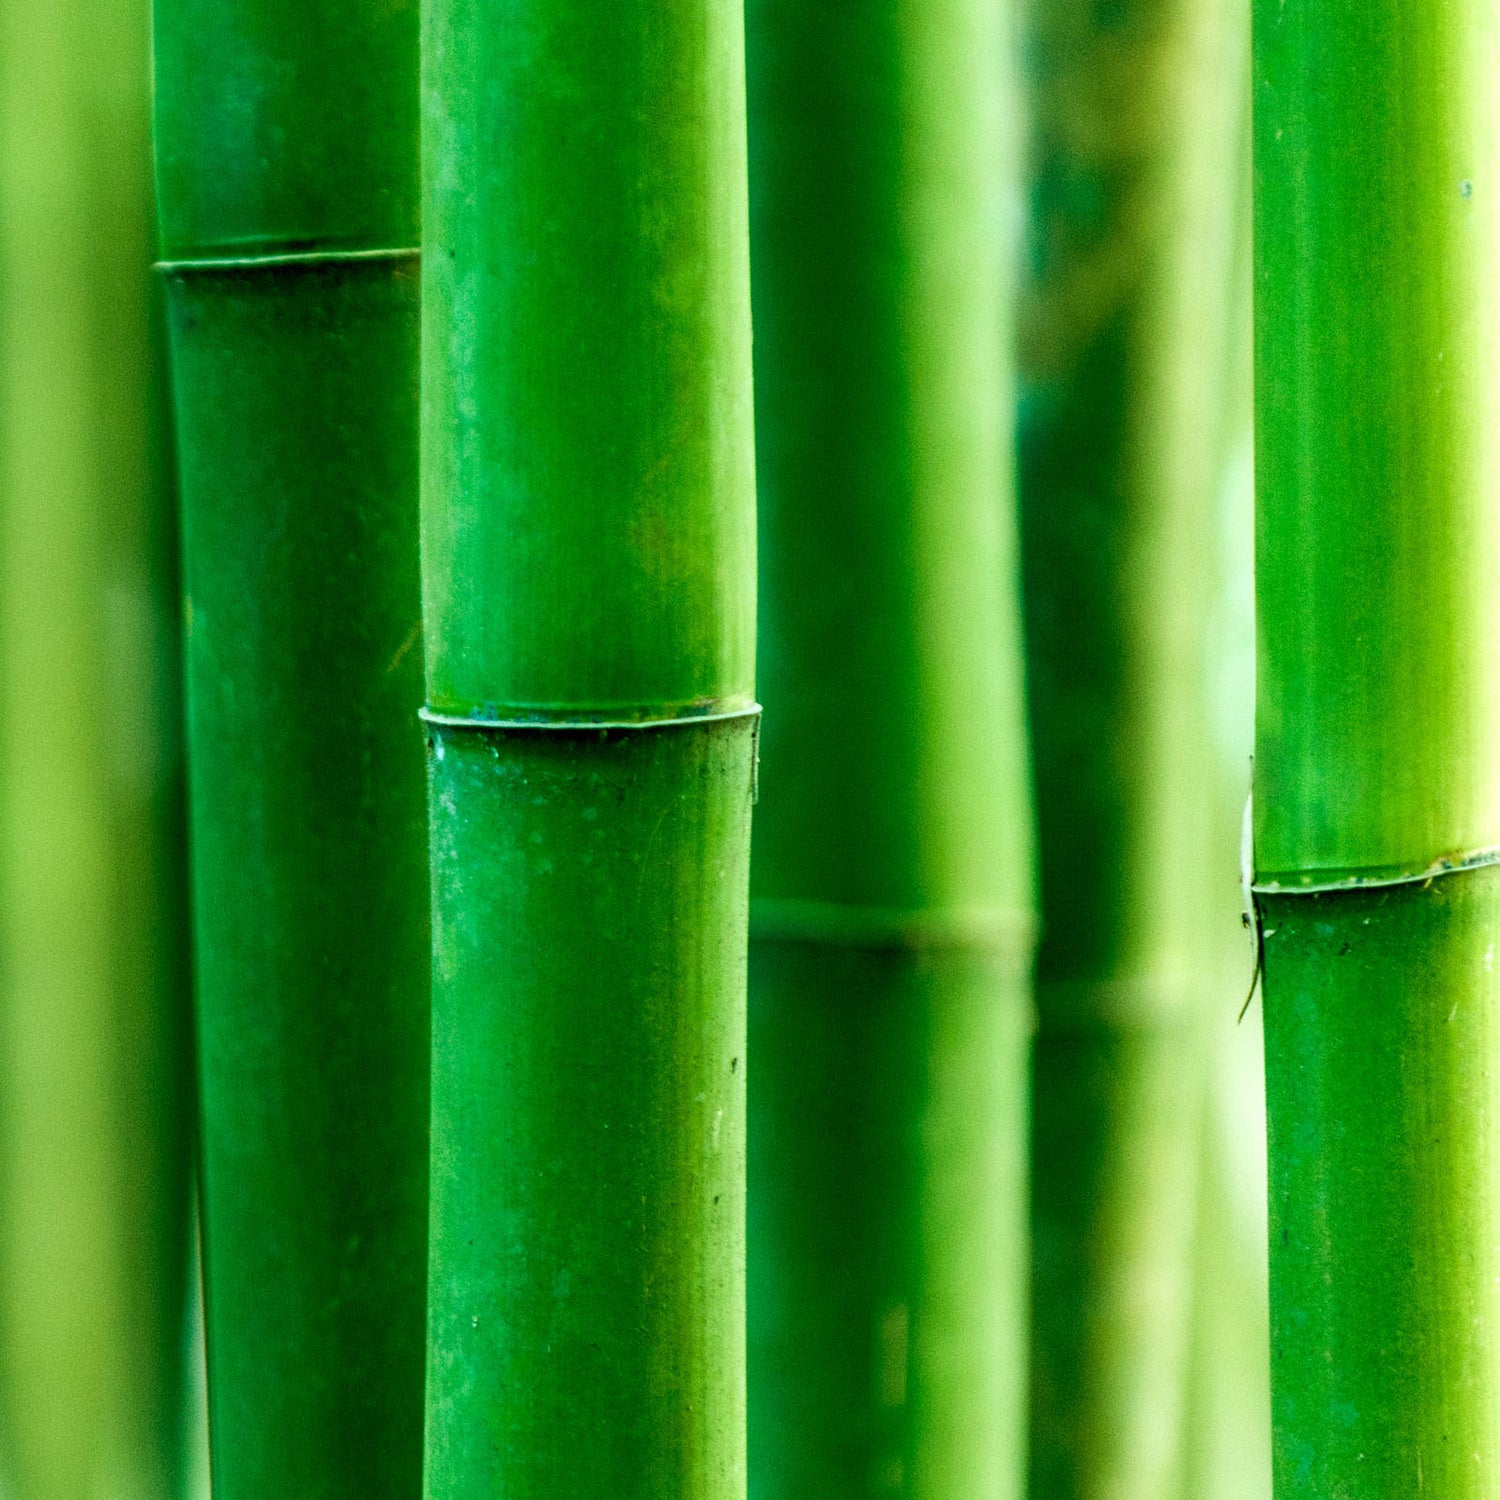 Bambusa arundinacea extract